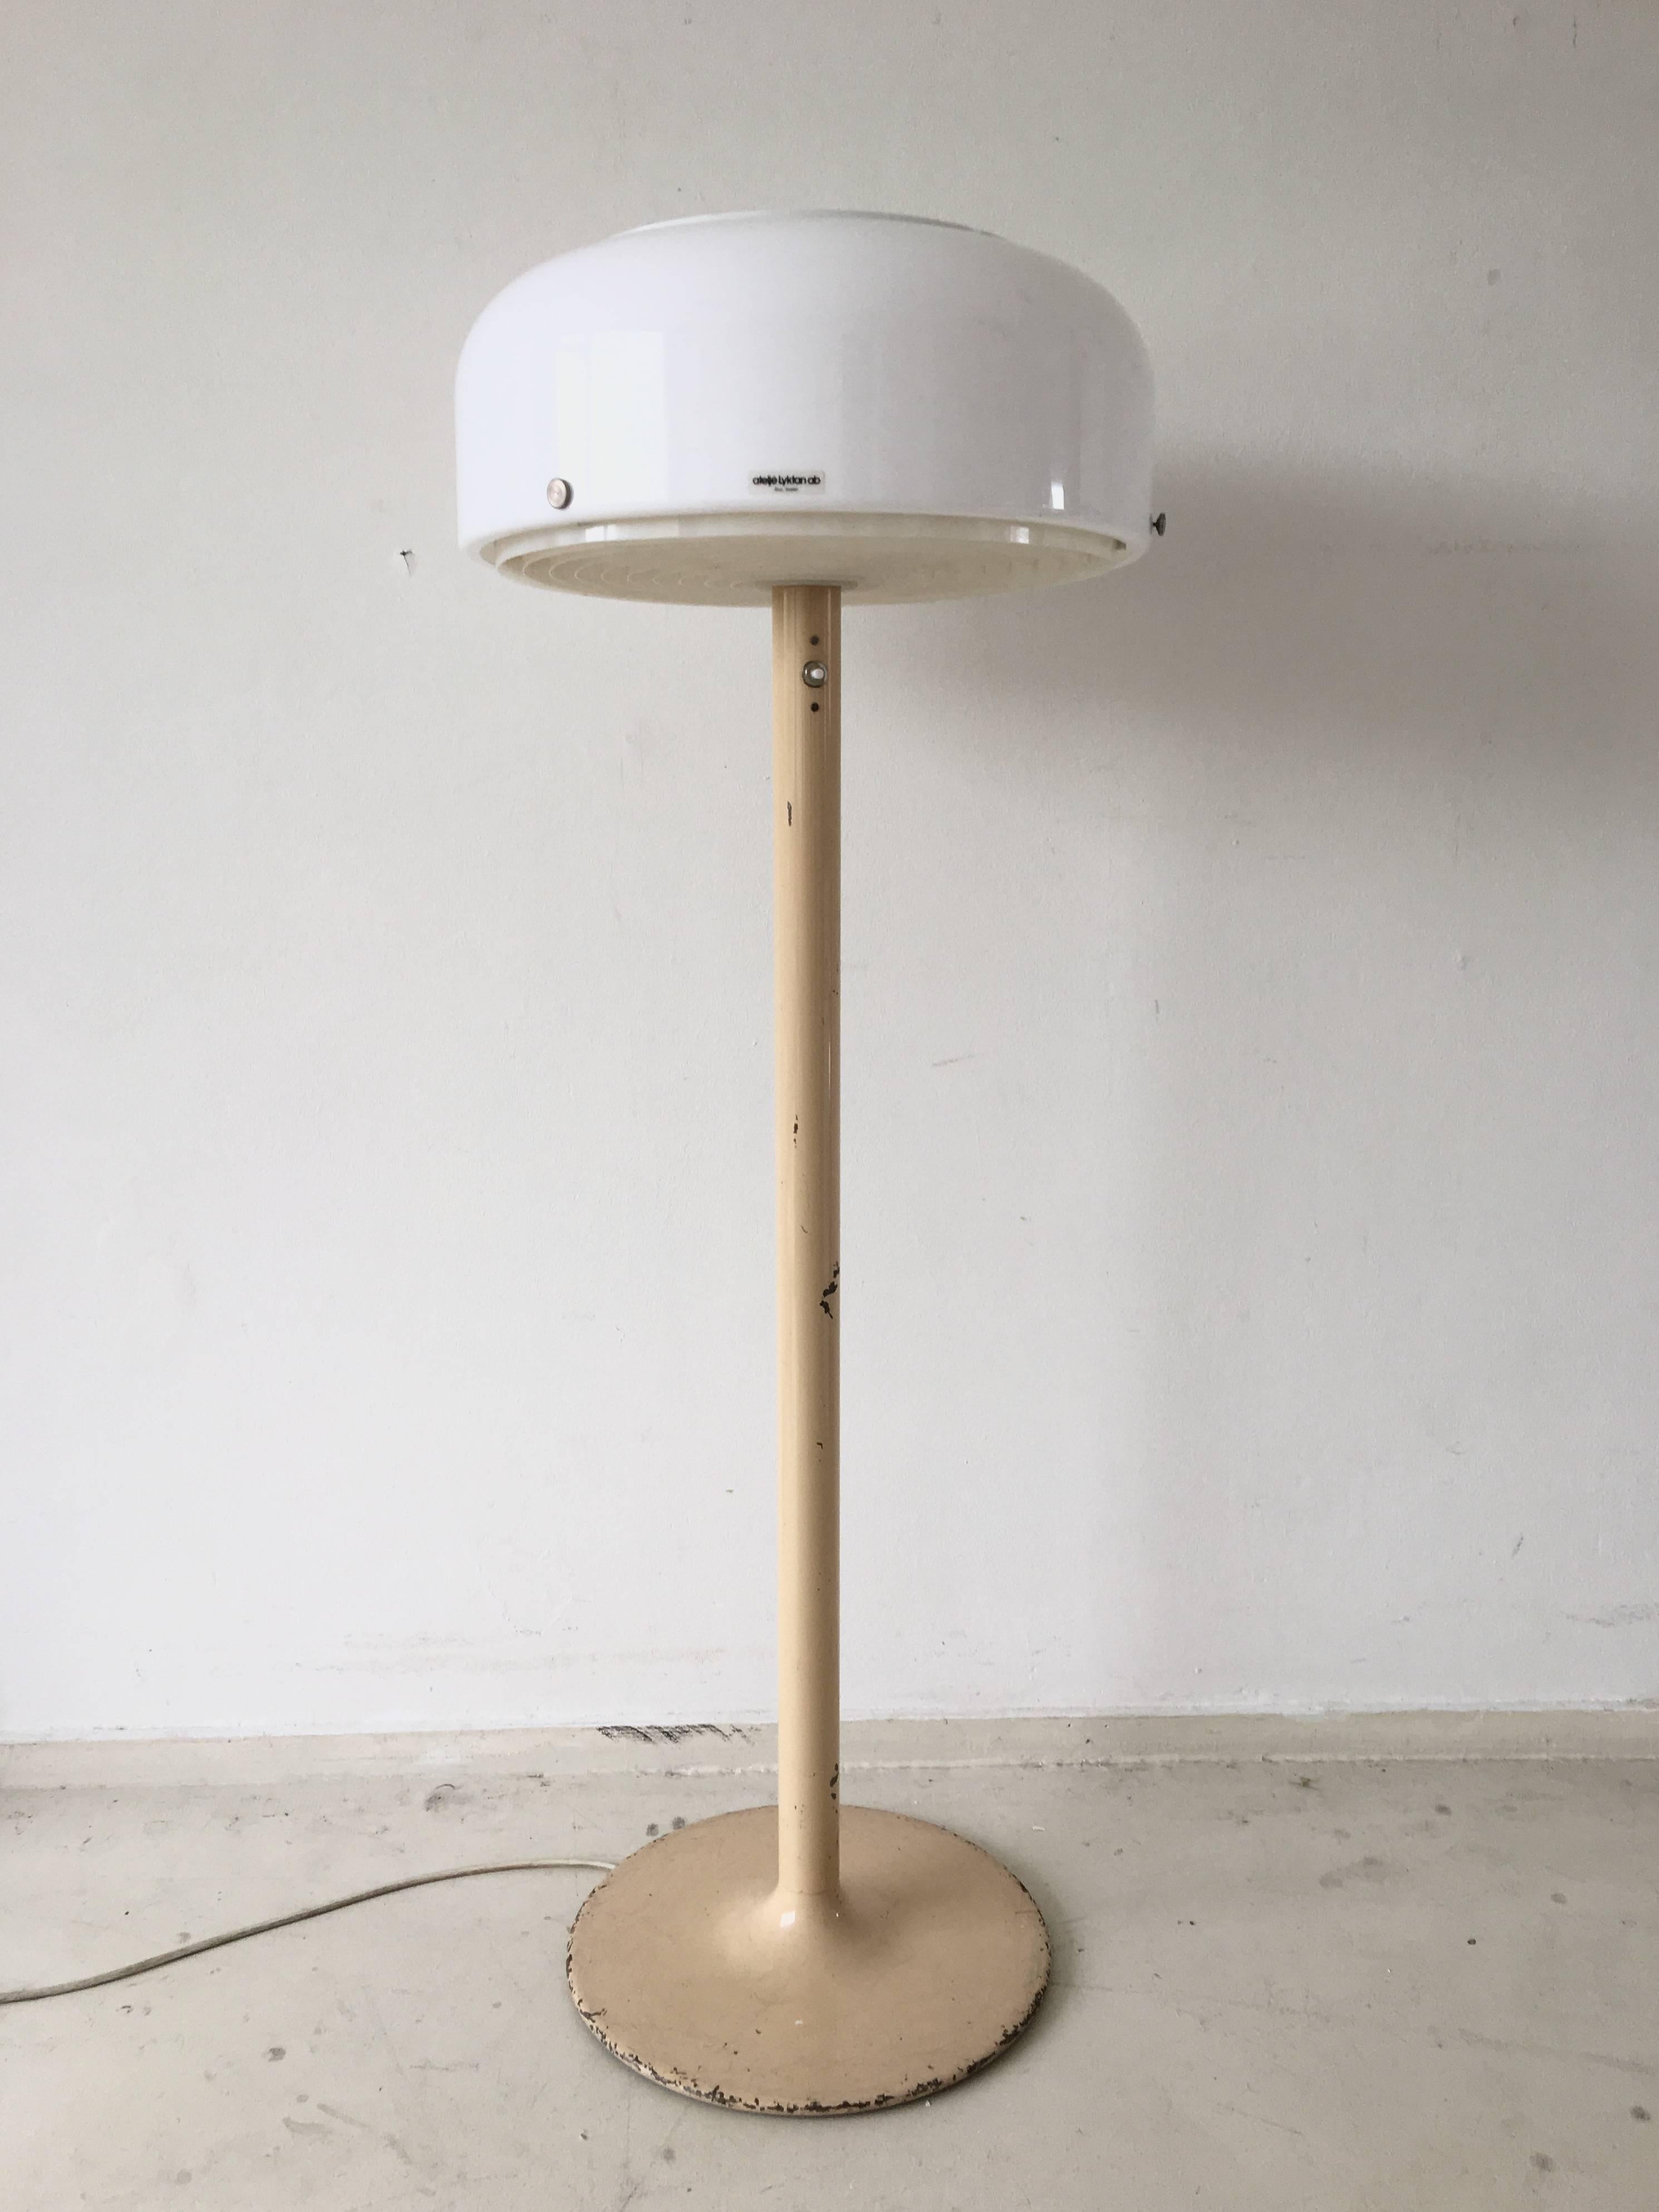 Ce lampadaire industriel suédois a été conçu par Anders Pehrson, vers les années 1970. Il présente une base en métal laqué crème avec un abat-jour en acrylique blanc. À l'intérieur de l'abat-jour, un anneau en plastique assure une bonne répartition